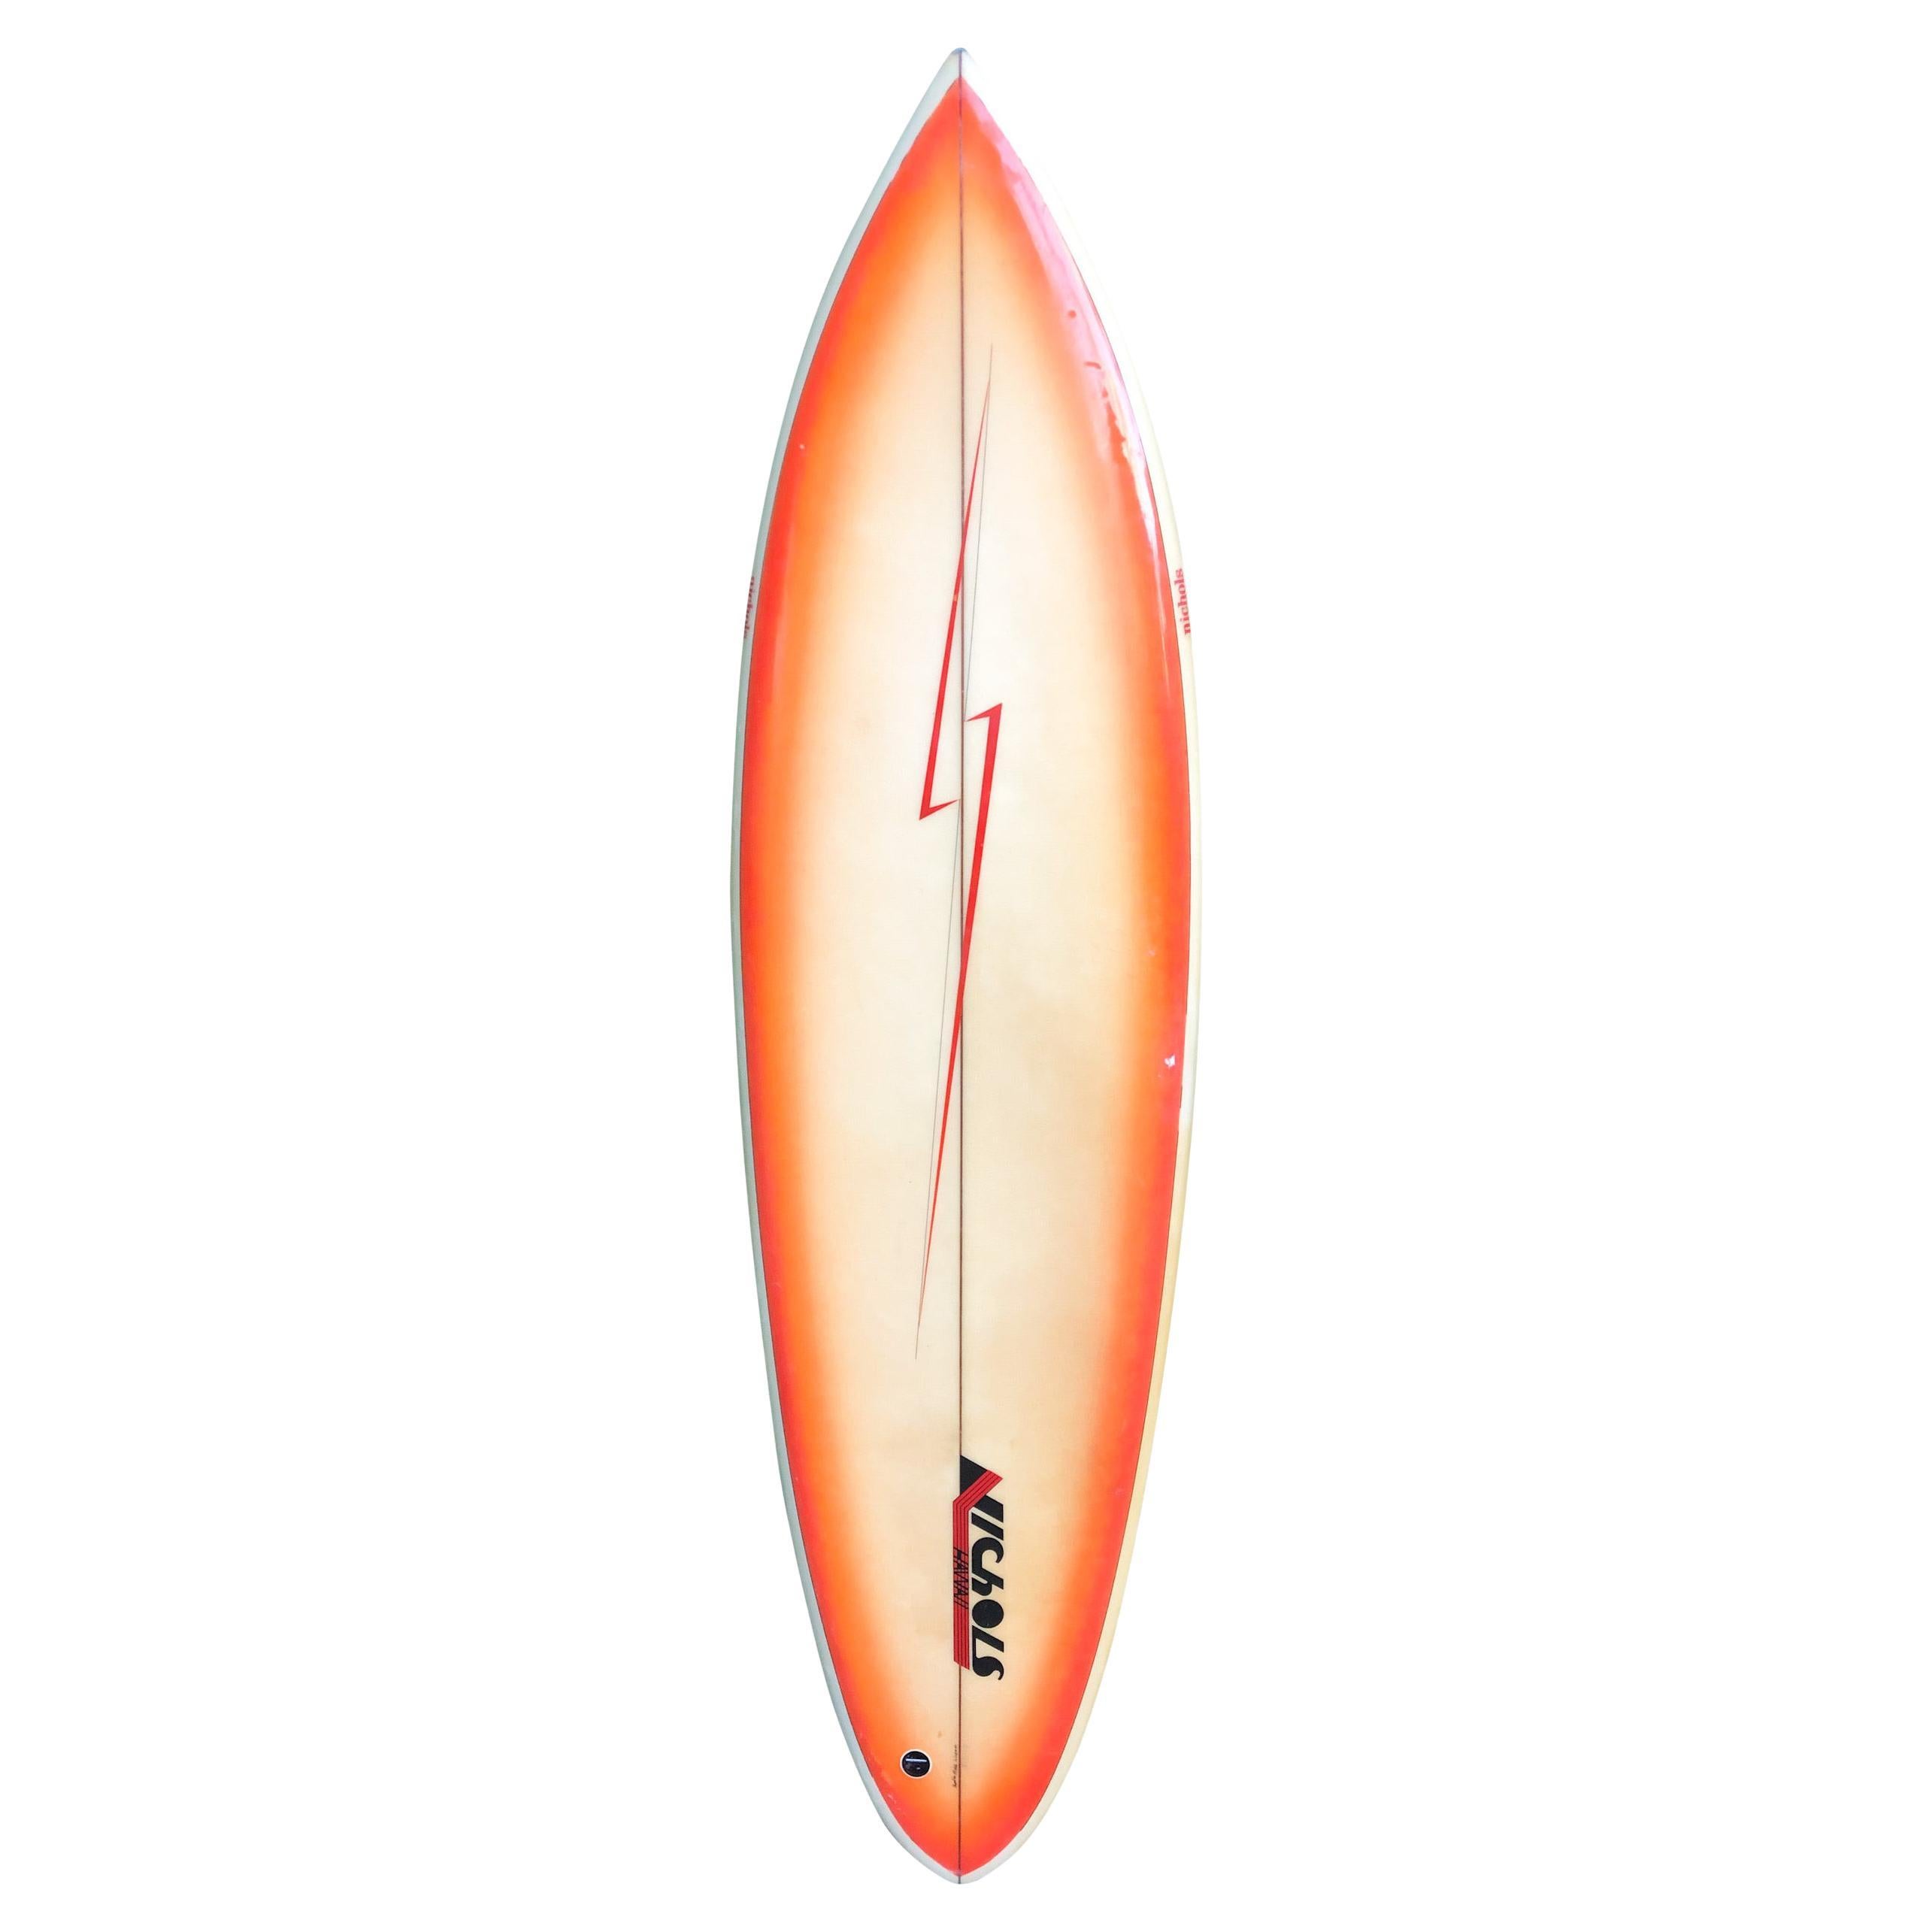 Vintage 1980s Lightning Bolt Surfboard by Danny Nichols